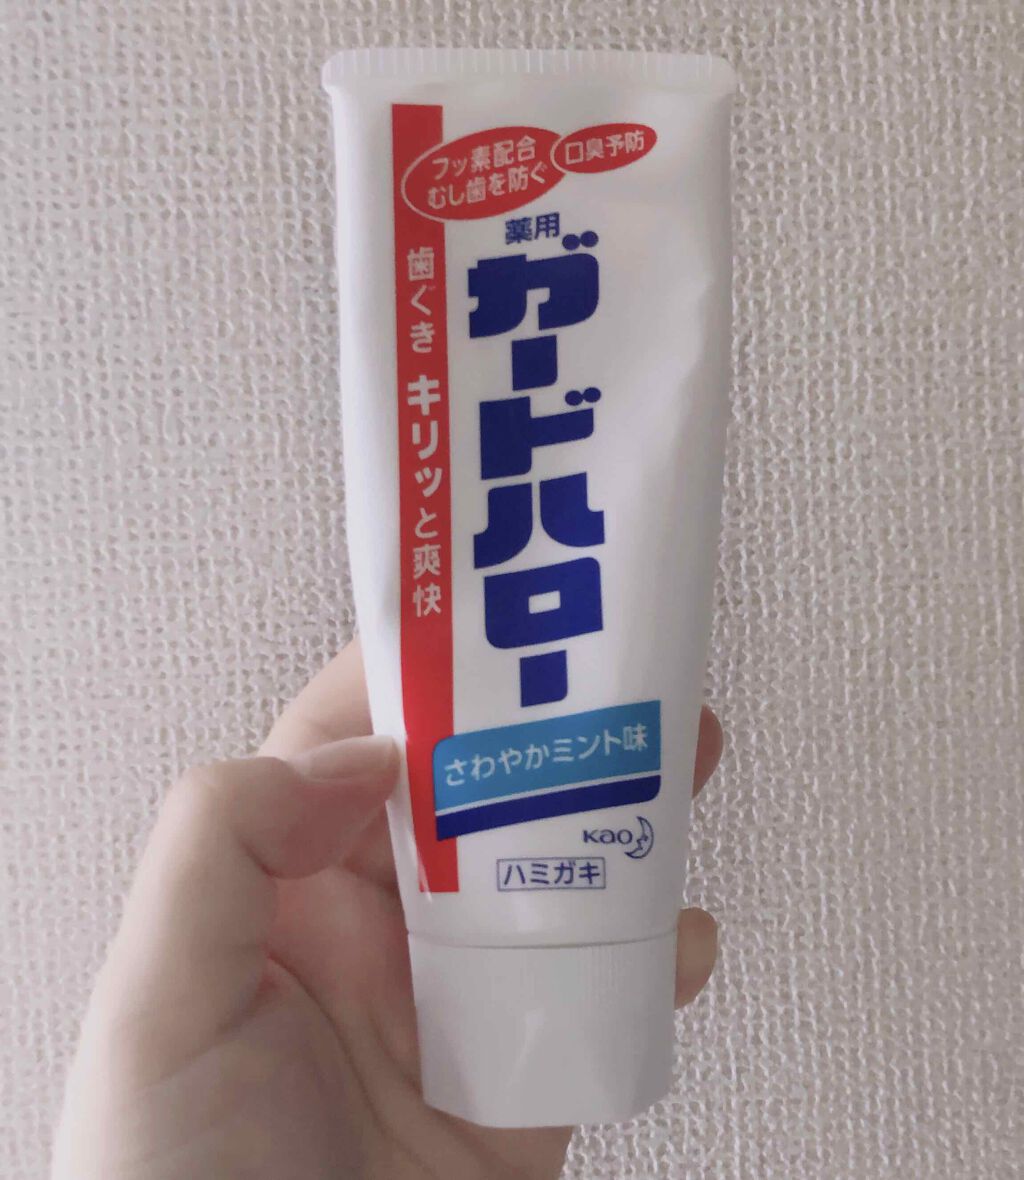 新着商品 花王 ガードハロー 歯磨き粉 165g × 8個 虫歯 歯肉炎予防